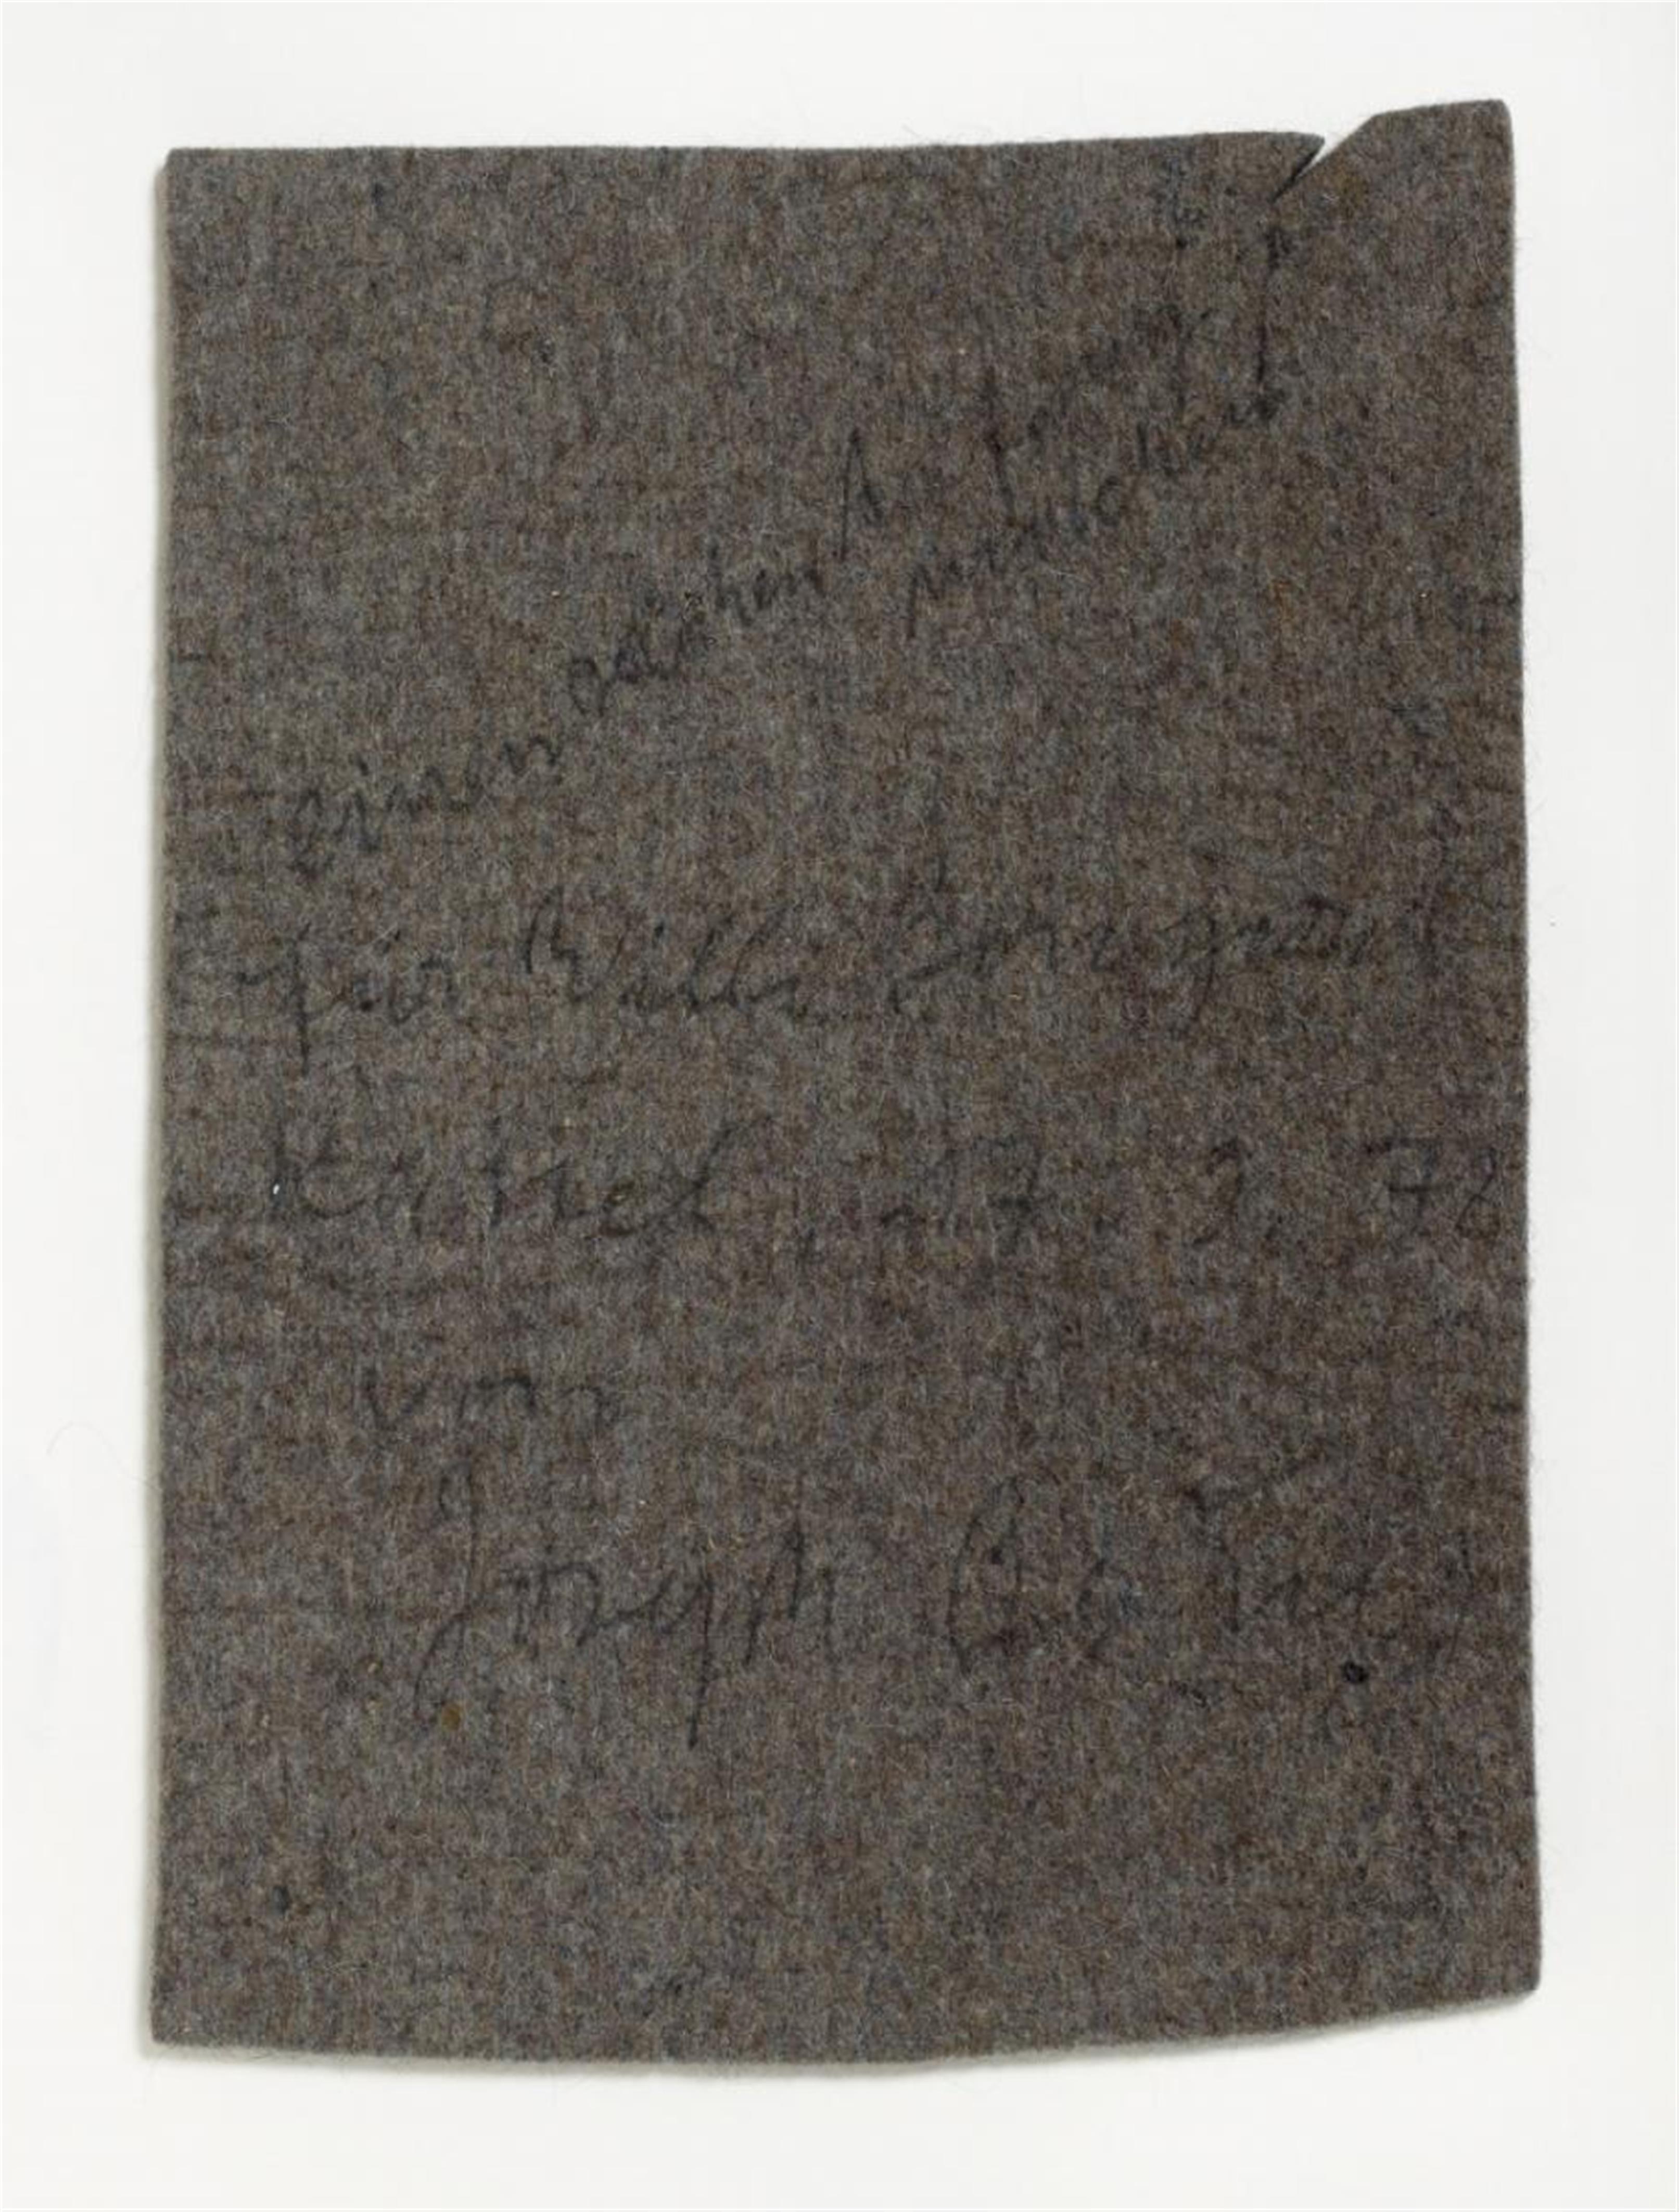 Joseph Beuys - Untitled (So kann die Parteiendiktatur überwunden werden) - image-1